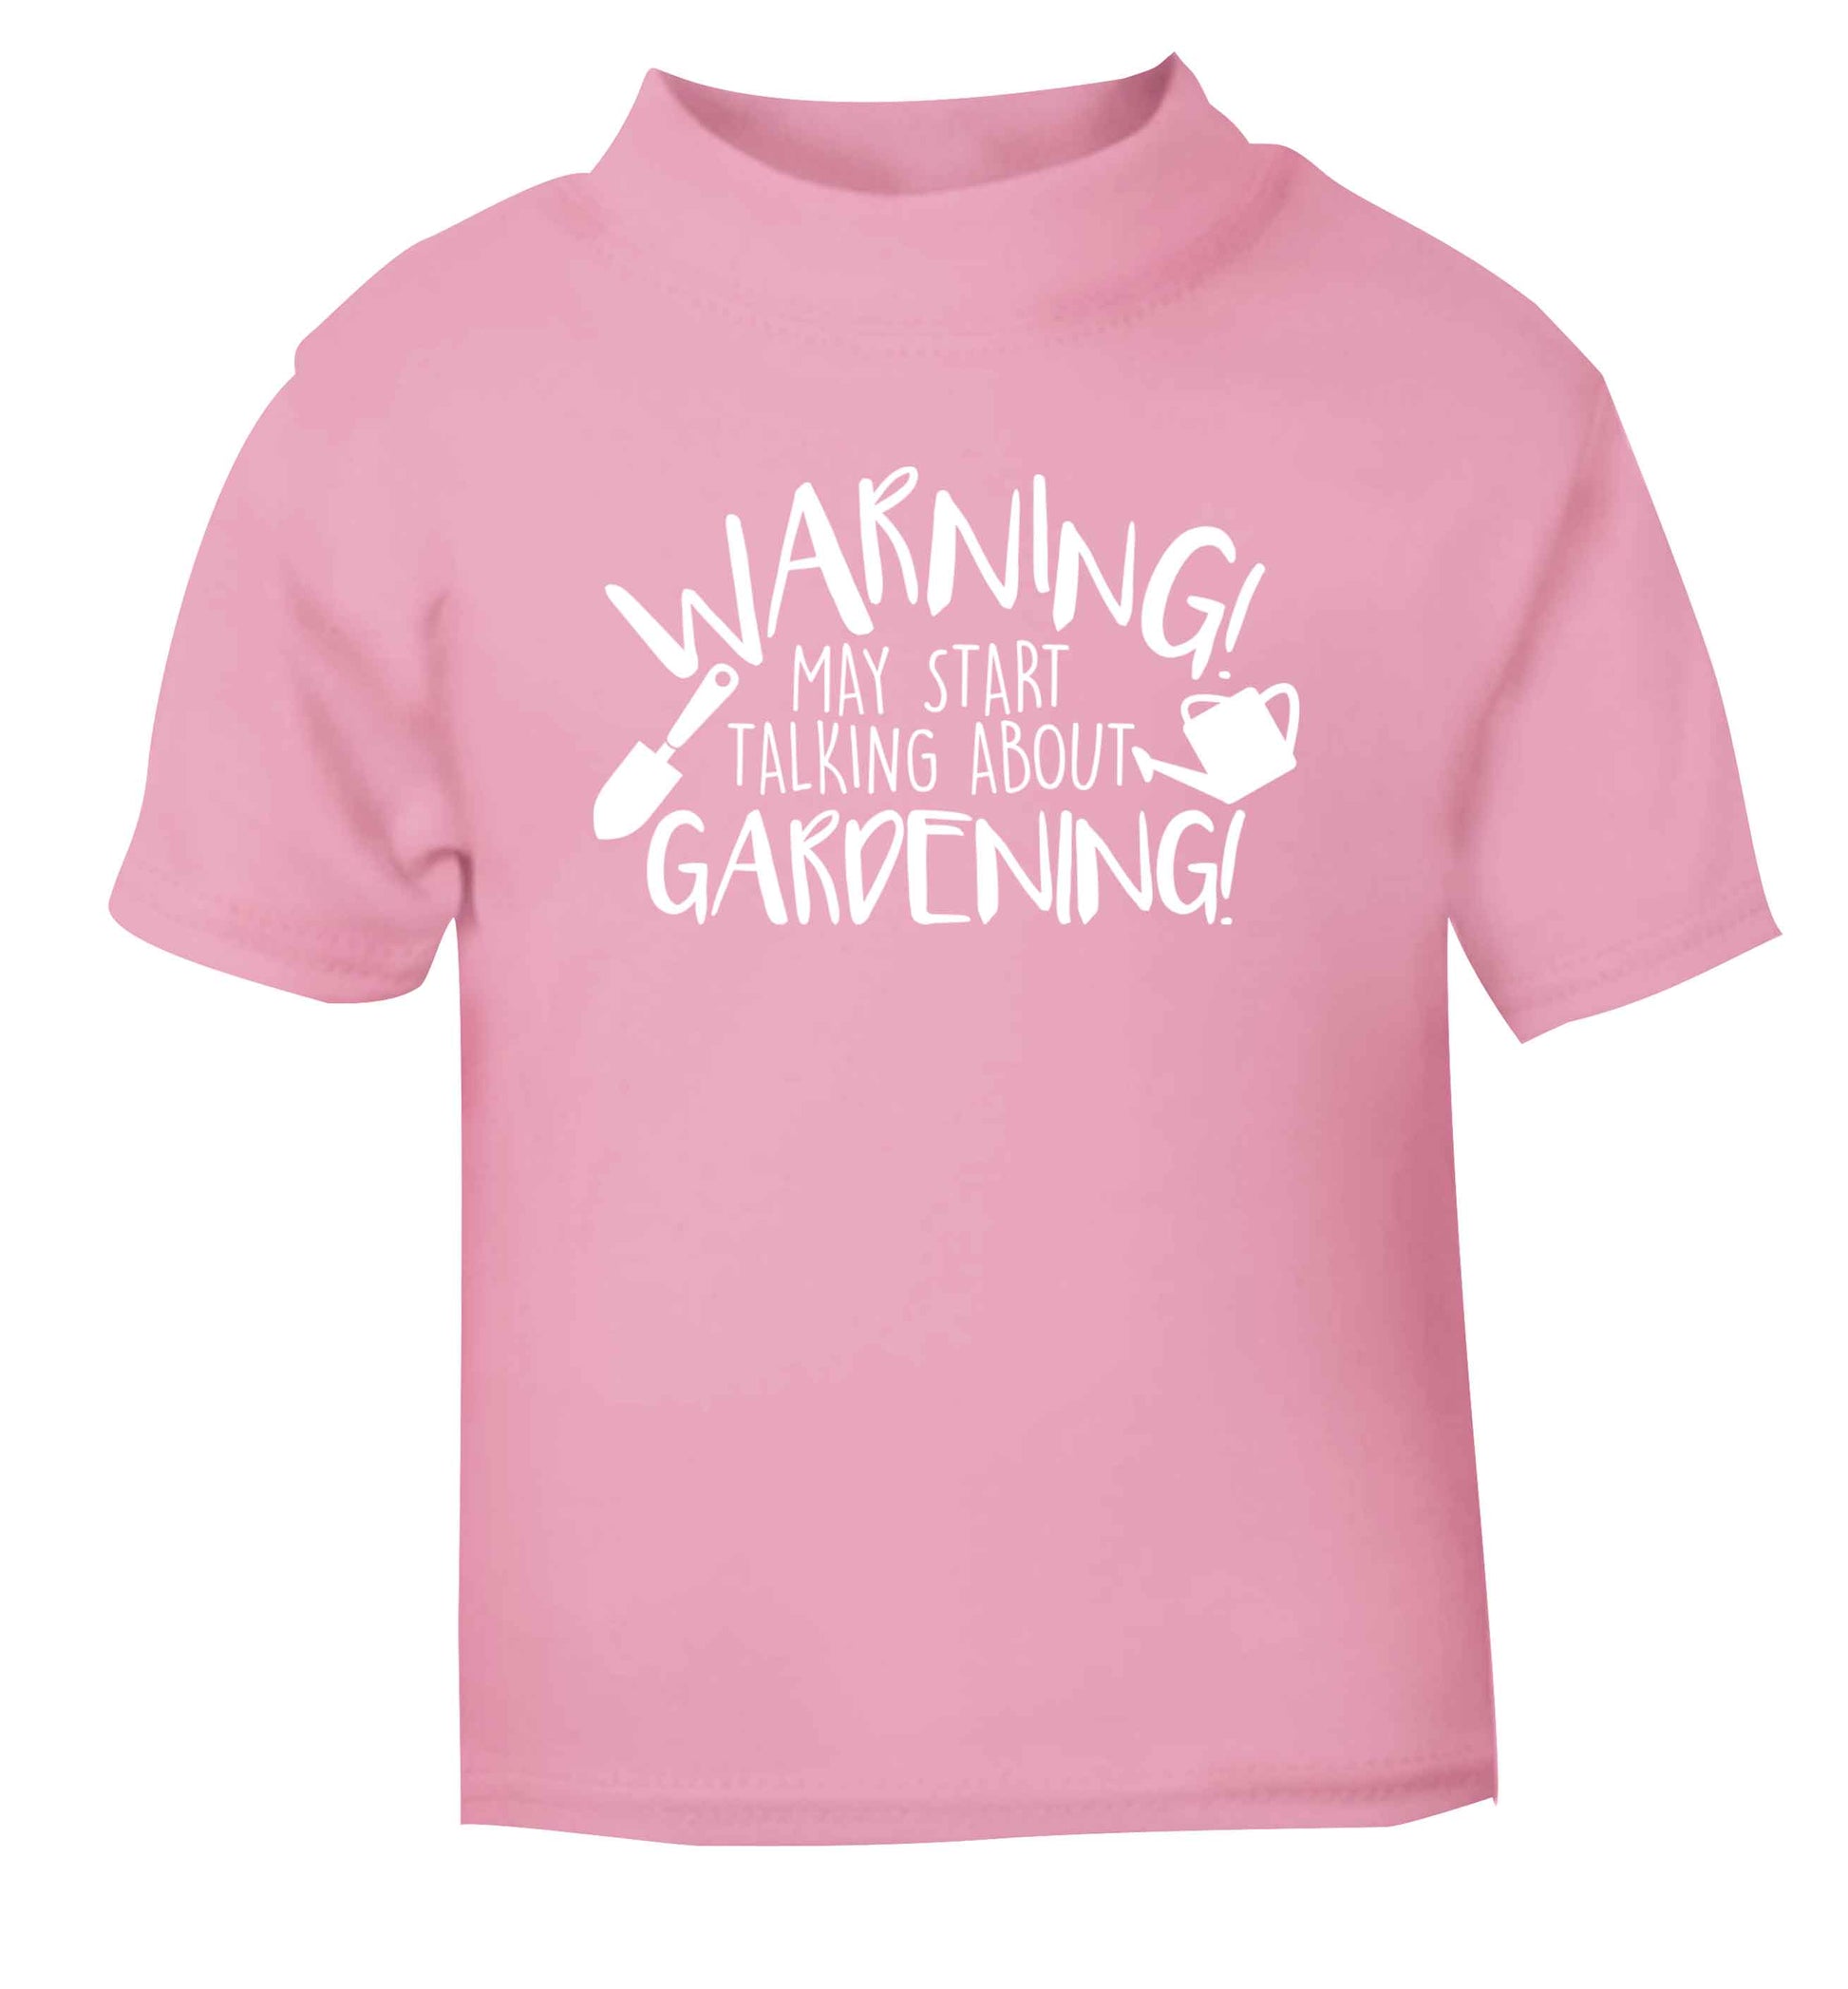 Warning may start talking about gardening light pink Baby Toddler Tshirt 2 Years